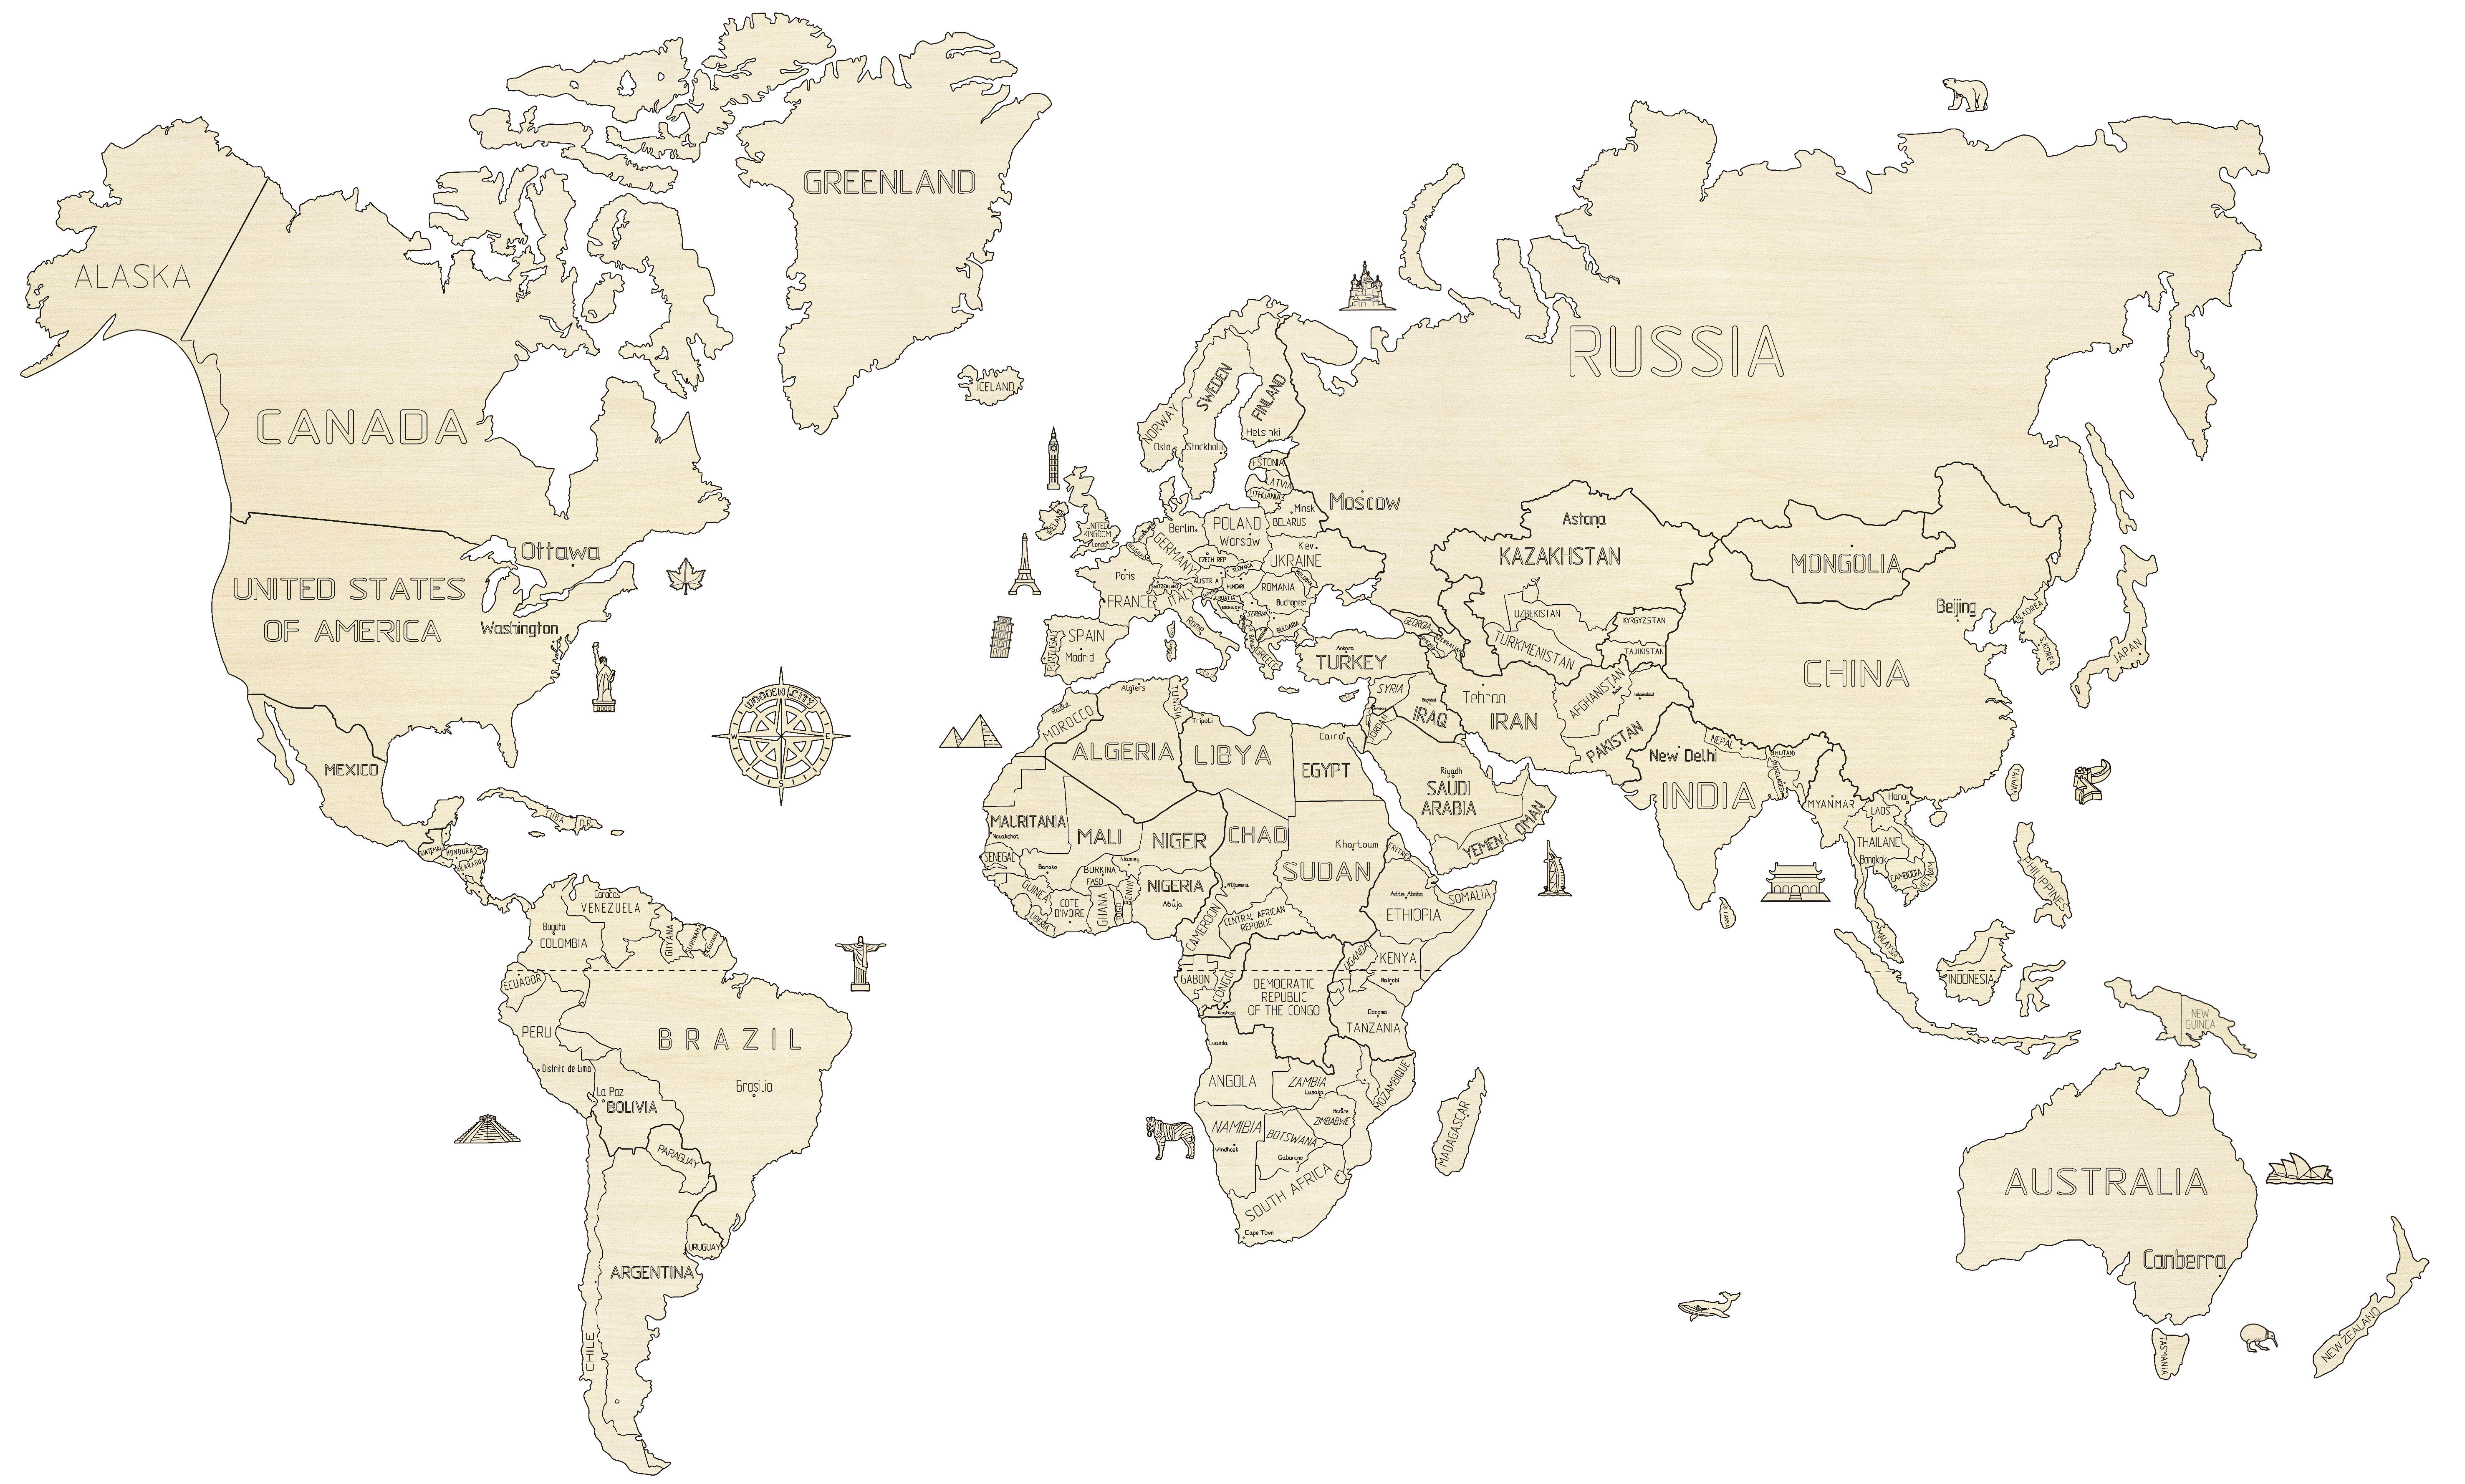 Wooden City ® mapa del mundo L World Map L 3d modelo de madera 3d puzzle de madera 